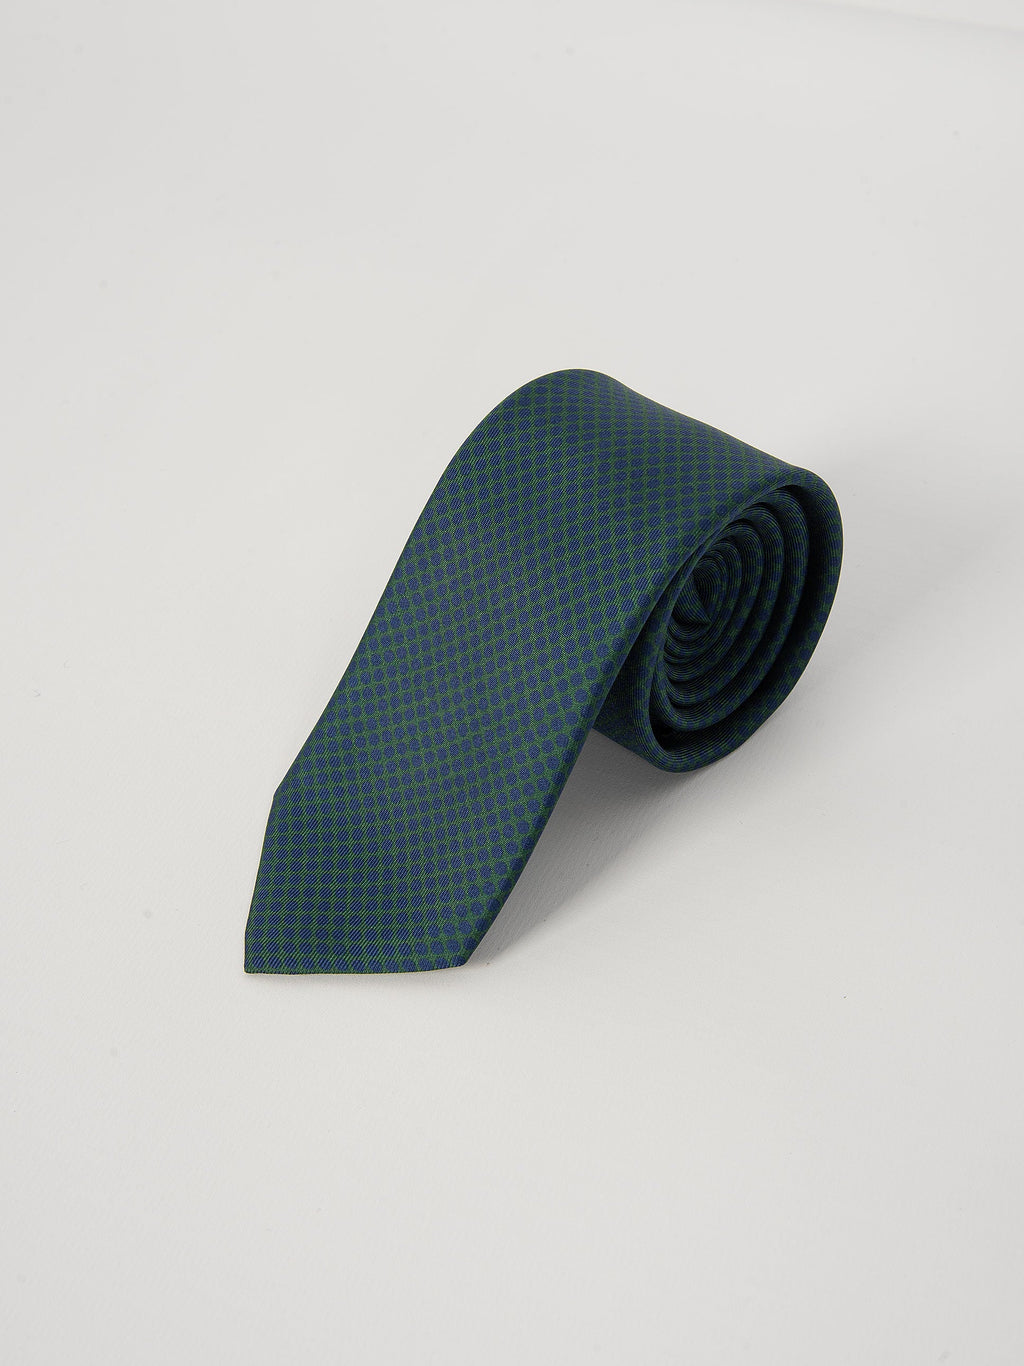 Cravatta Seta Pois - Verde/Blu